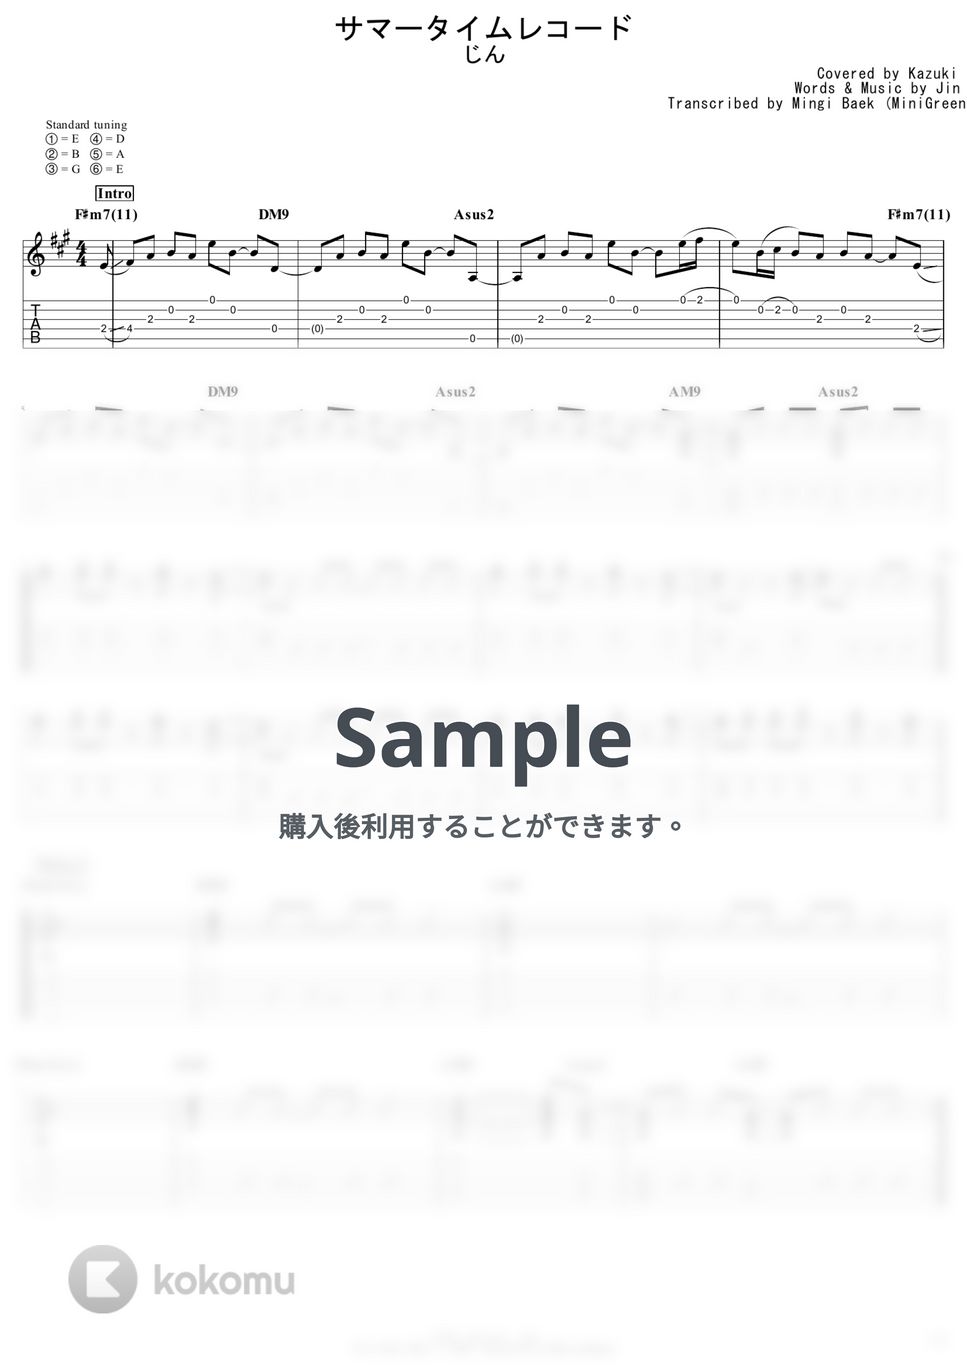 じん - サマータイムレコード by Kazuki